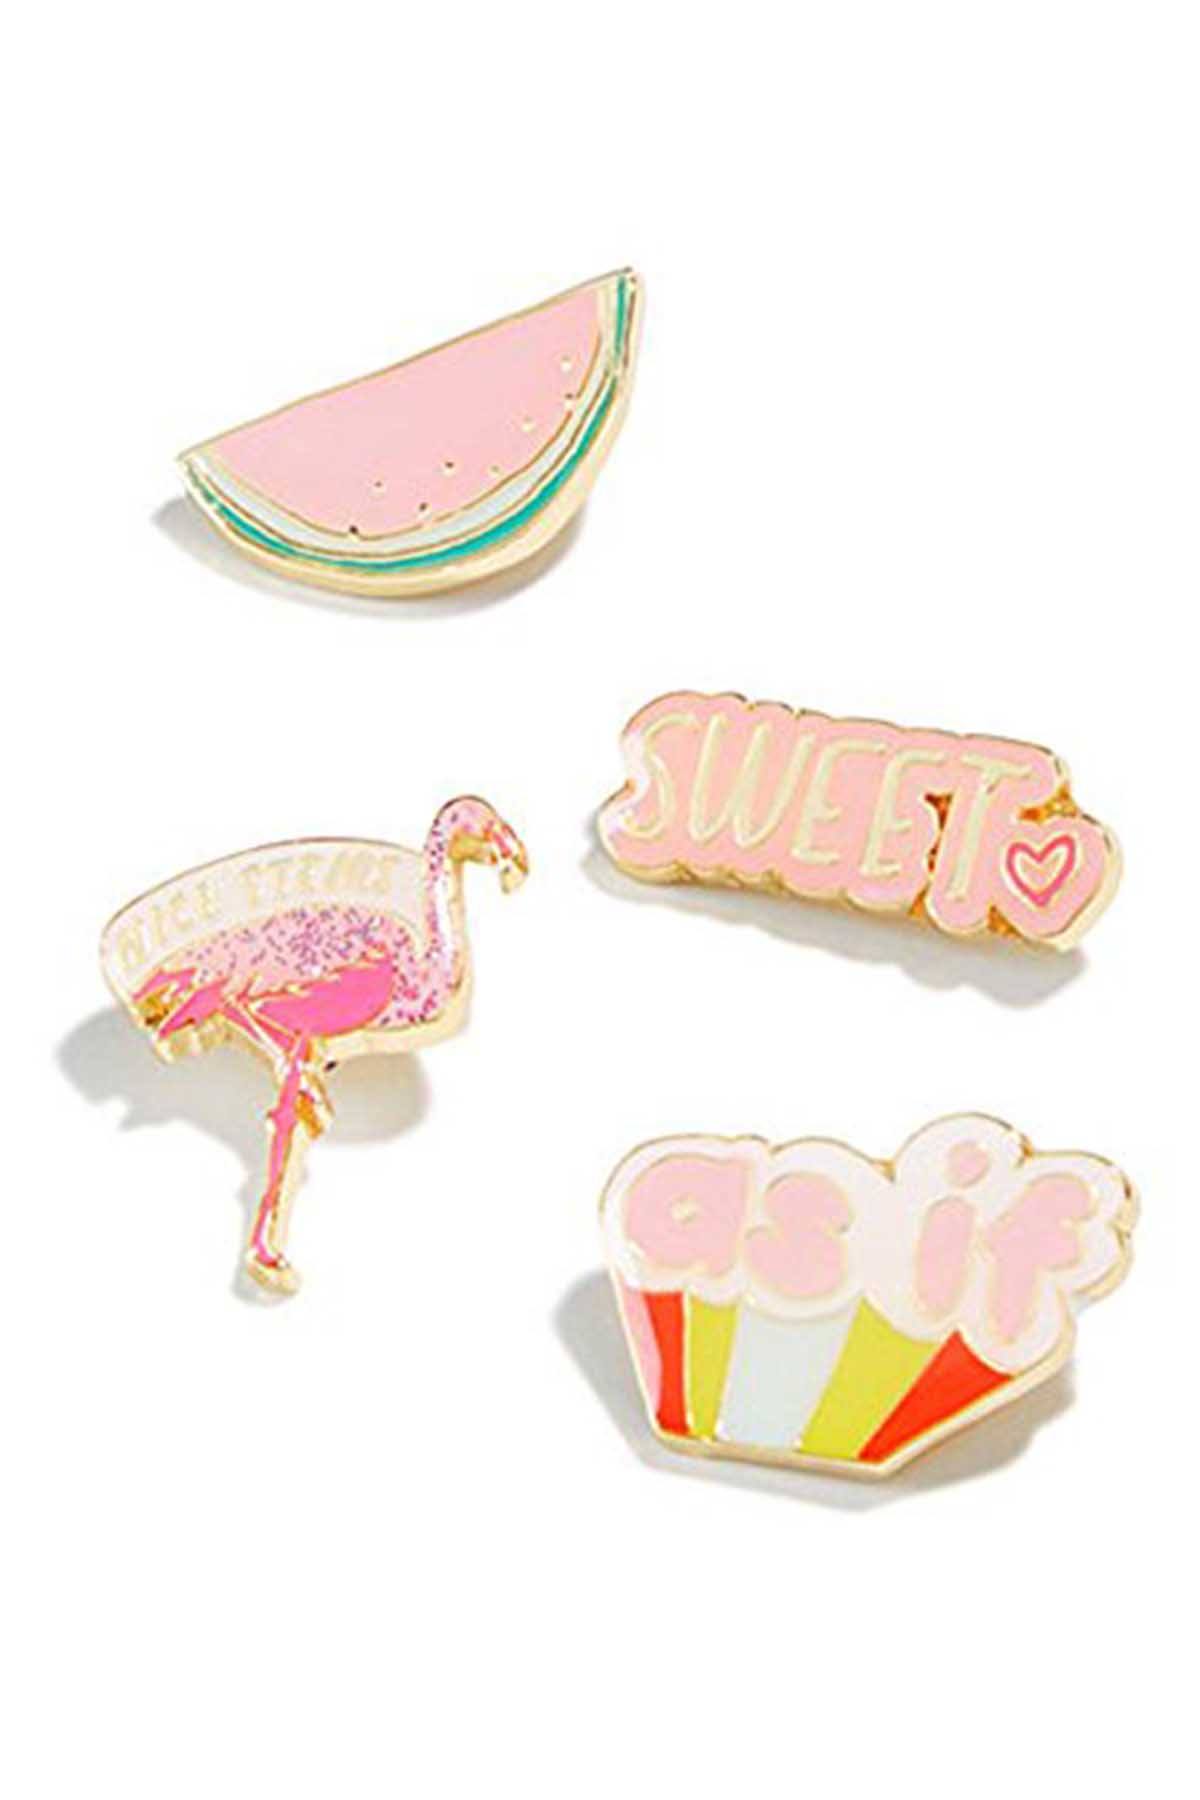 Celebrate Shop Sweets 4-pc Pin Set